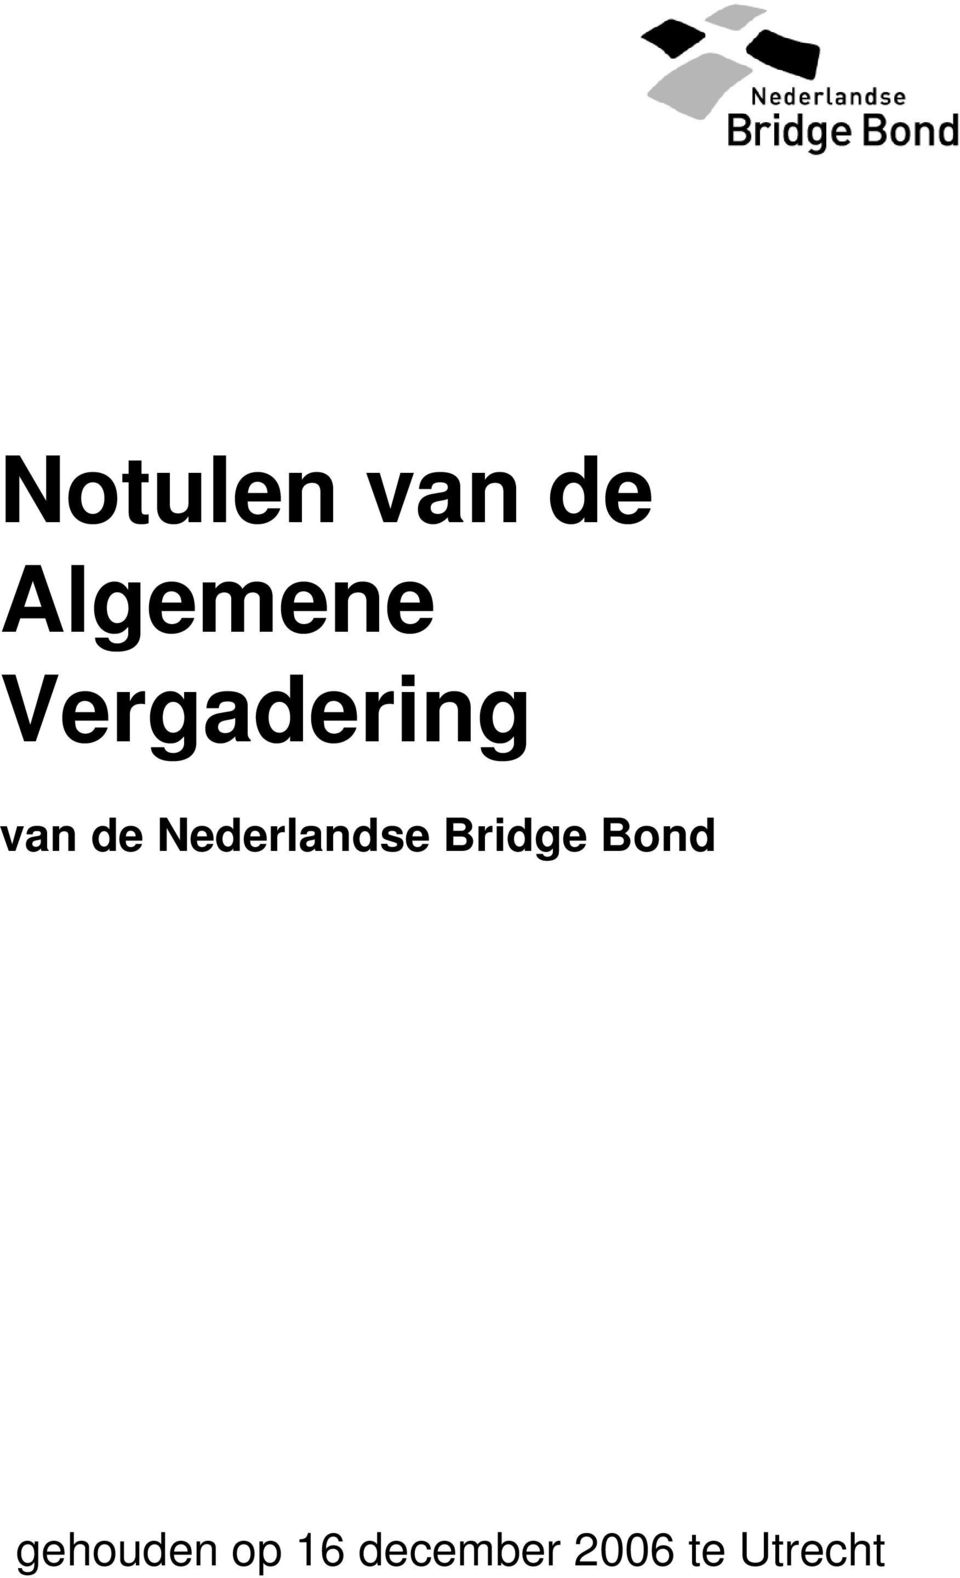 Nederlandse Bridge Bond